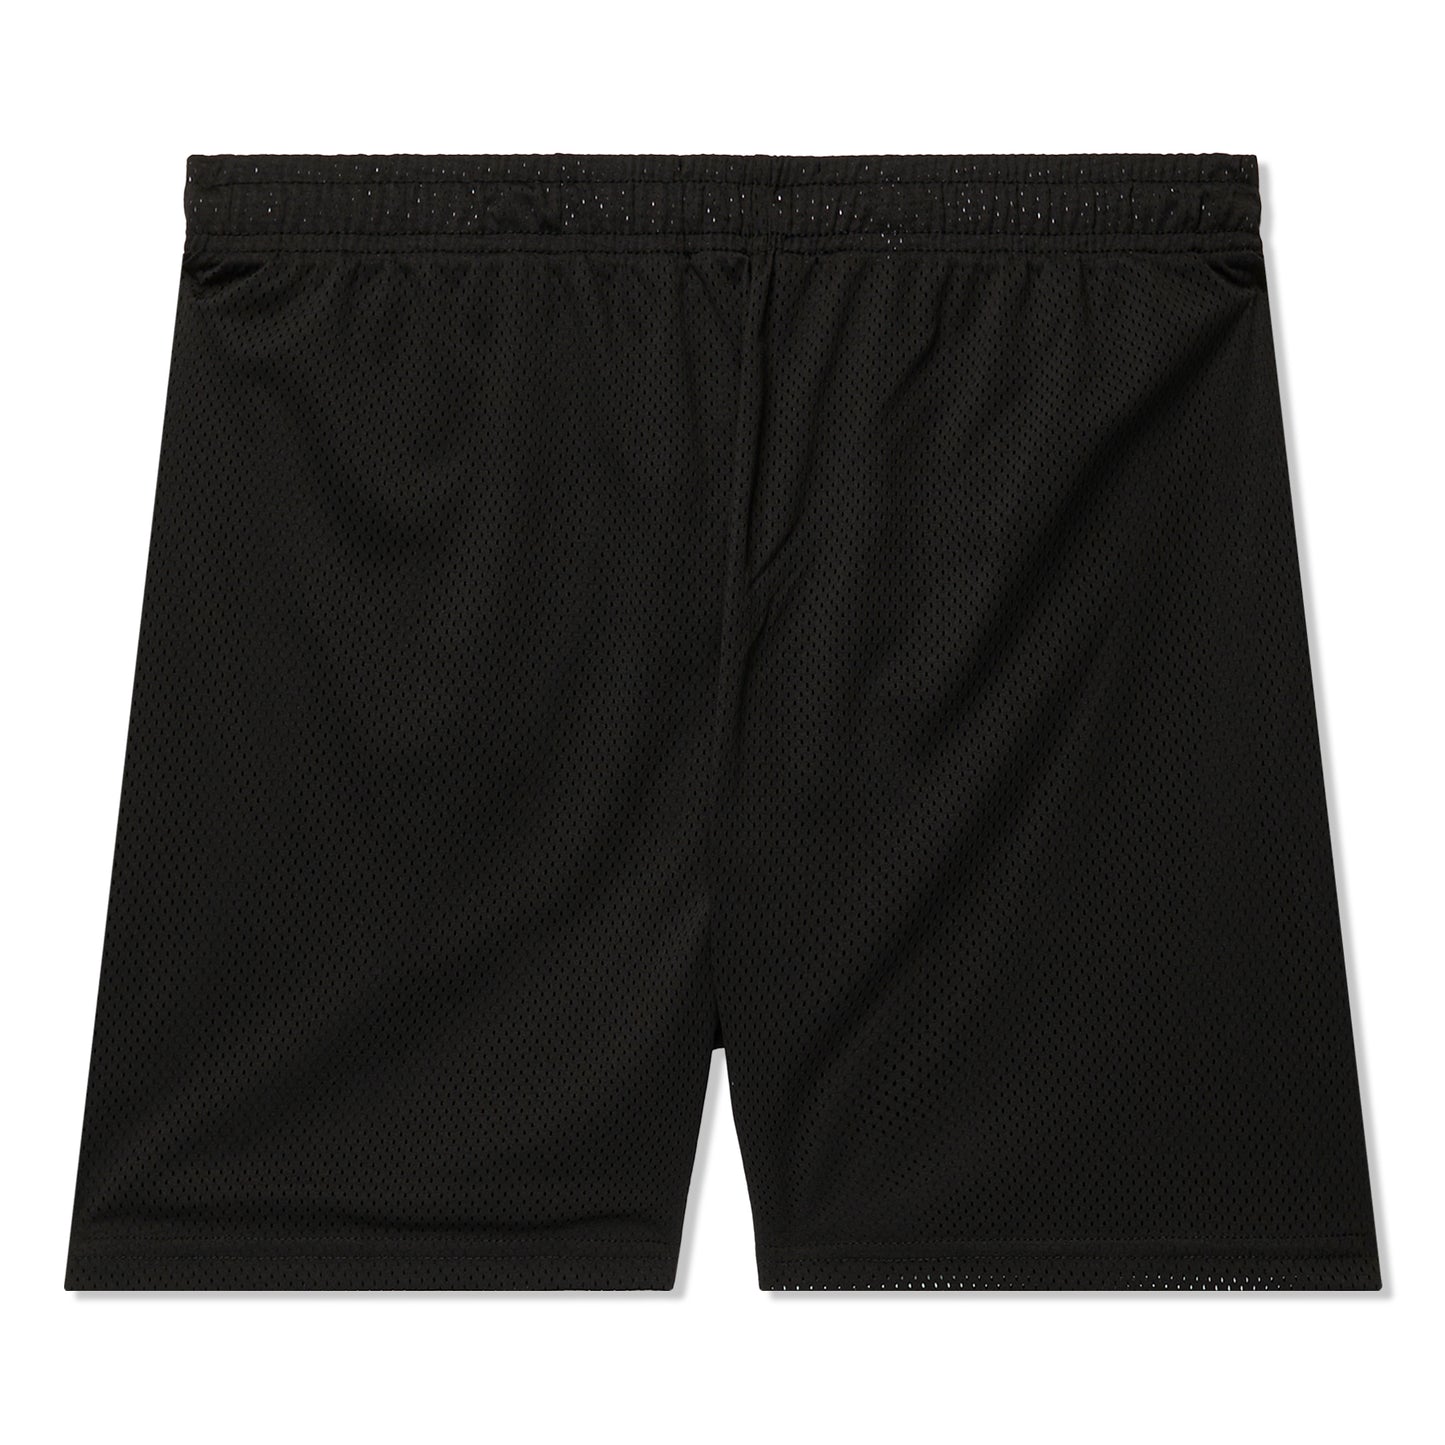 Concepts Pickup Basketball Mesh Short (Black)